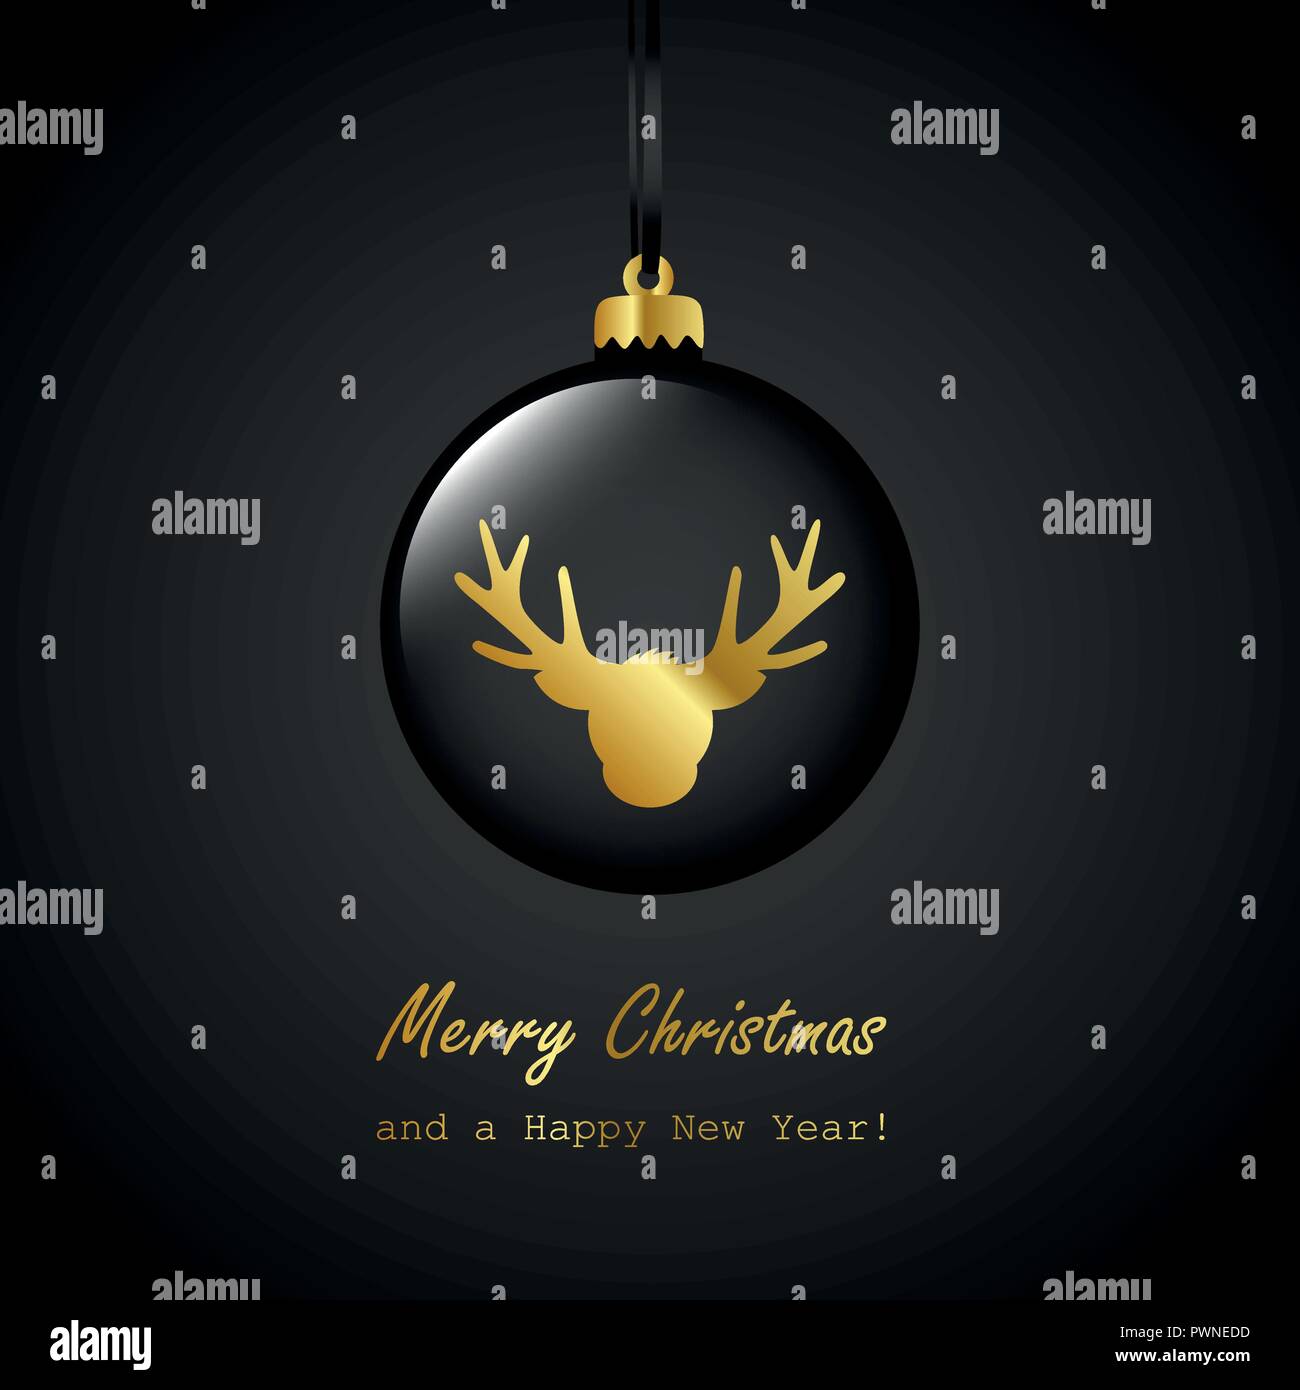 Schwarz Weihnachtskugel mit goldenen Rentier frohe Weihnachten Grußkarte Vektor-illustration EPS 10. Stock Vektor